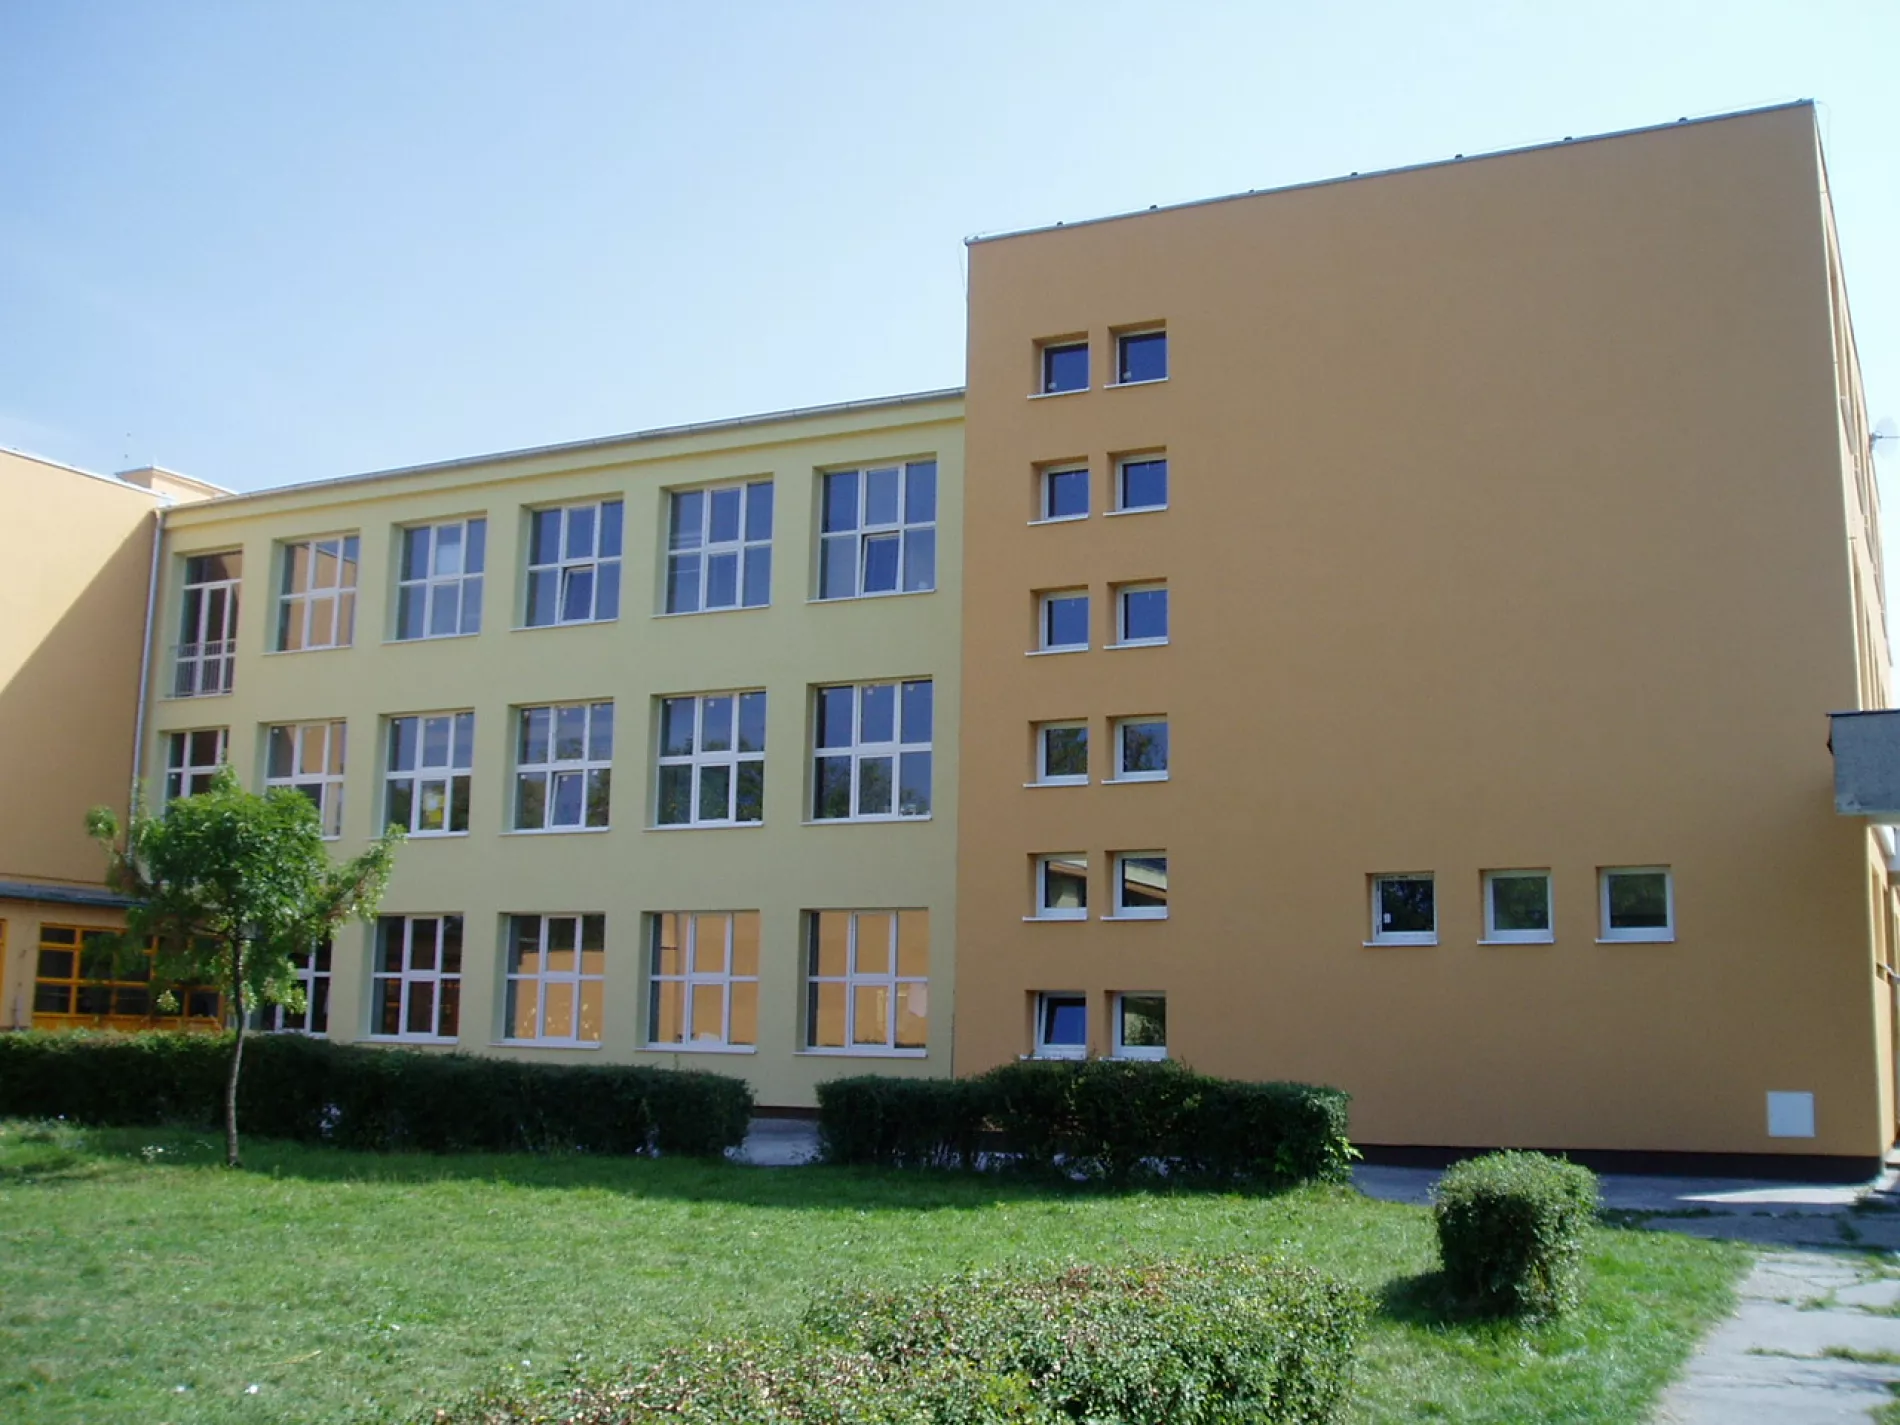 Školy vo Vajnoroch po prázdninách